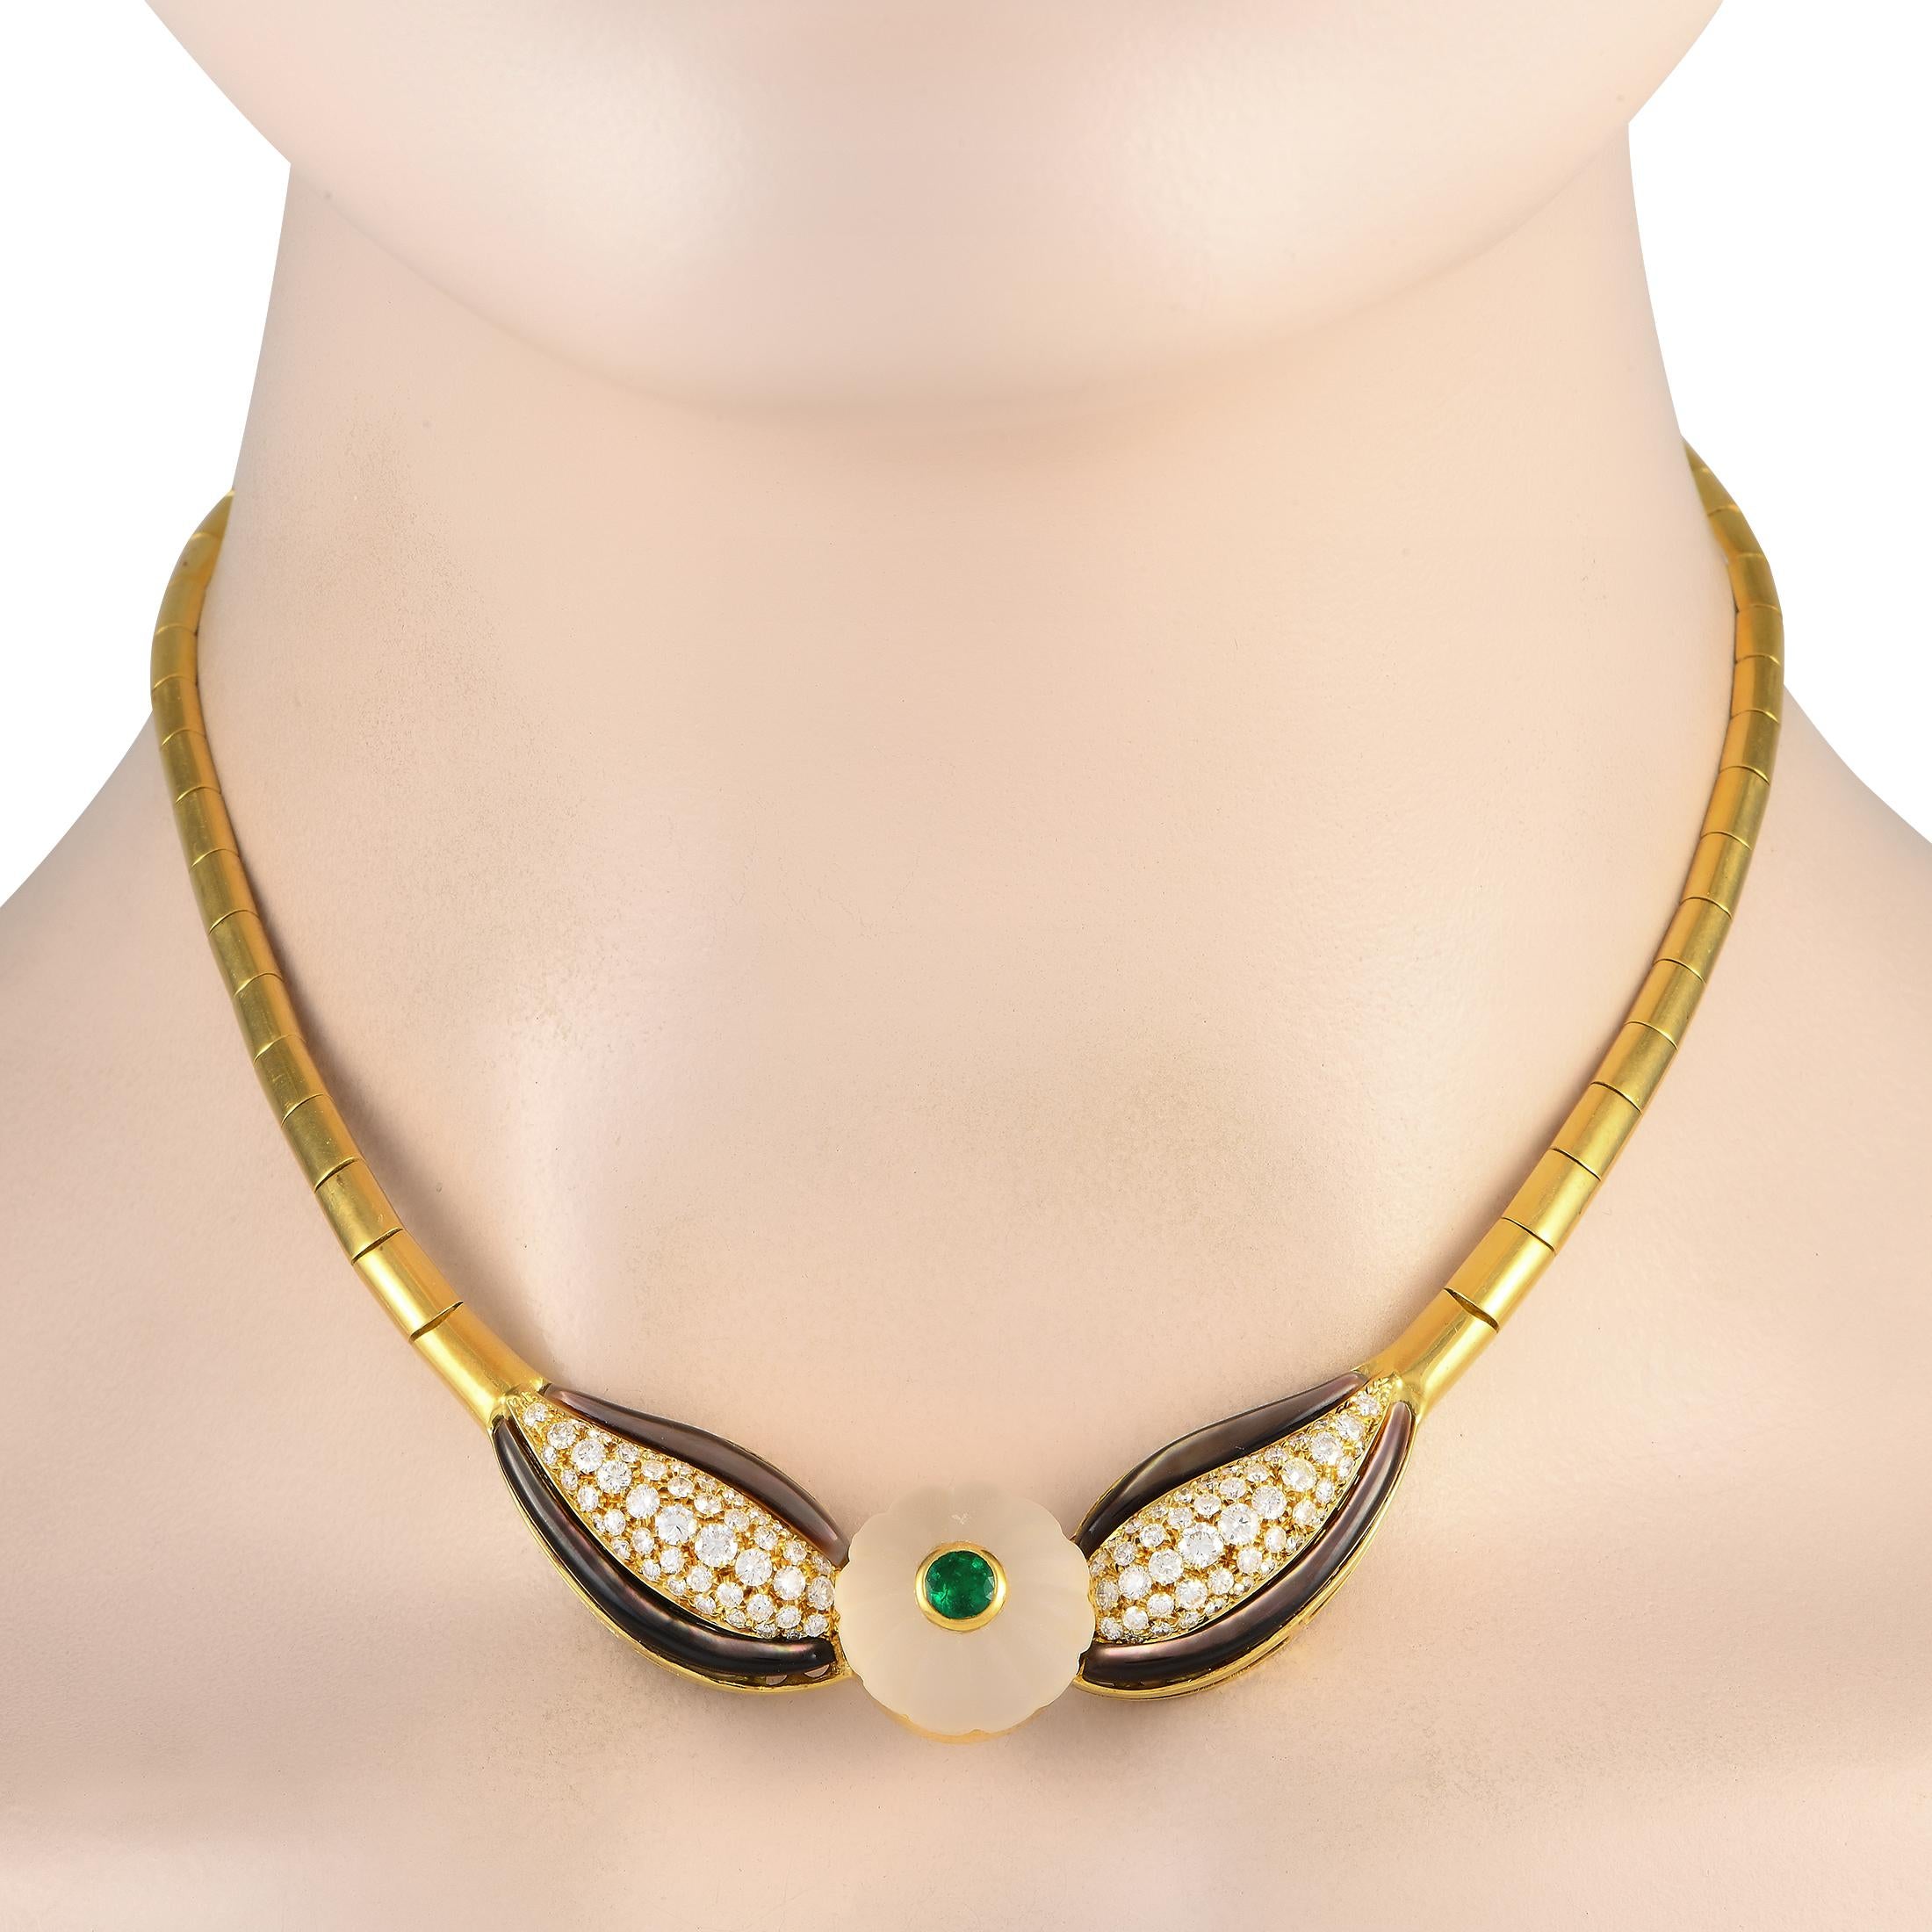 Lust auf ein bisschen Drama in Ihrem Kleiderschrank? Diese Vintage-Halskette von Bvlgari bringt den Charme der 80er Jahre zurück. Die Halskette besteht aus halbrunden Gliedern aus 18 Karat Gelbgold, die zu einer dekorativen Mitte führen. Im